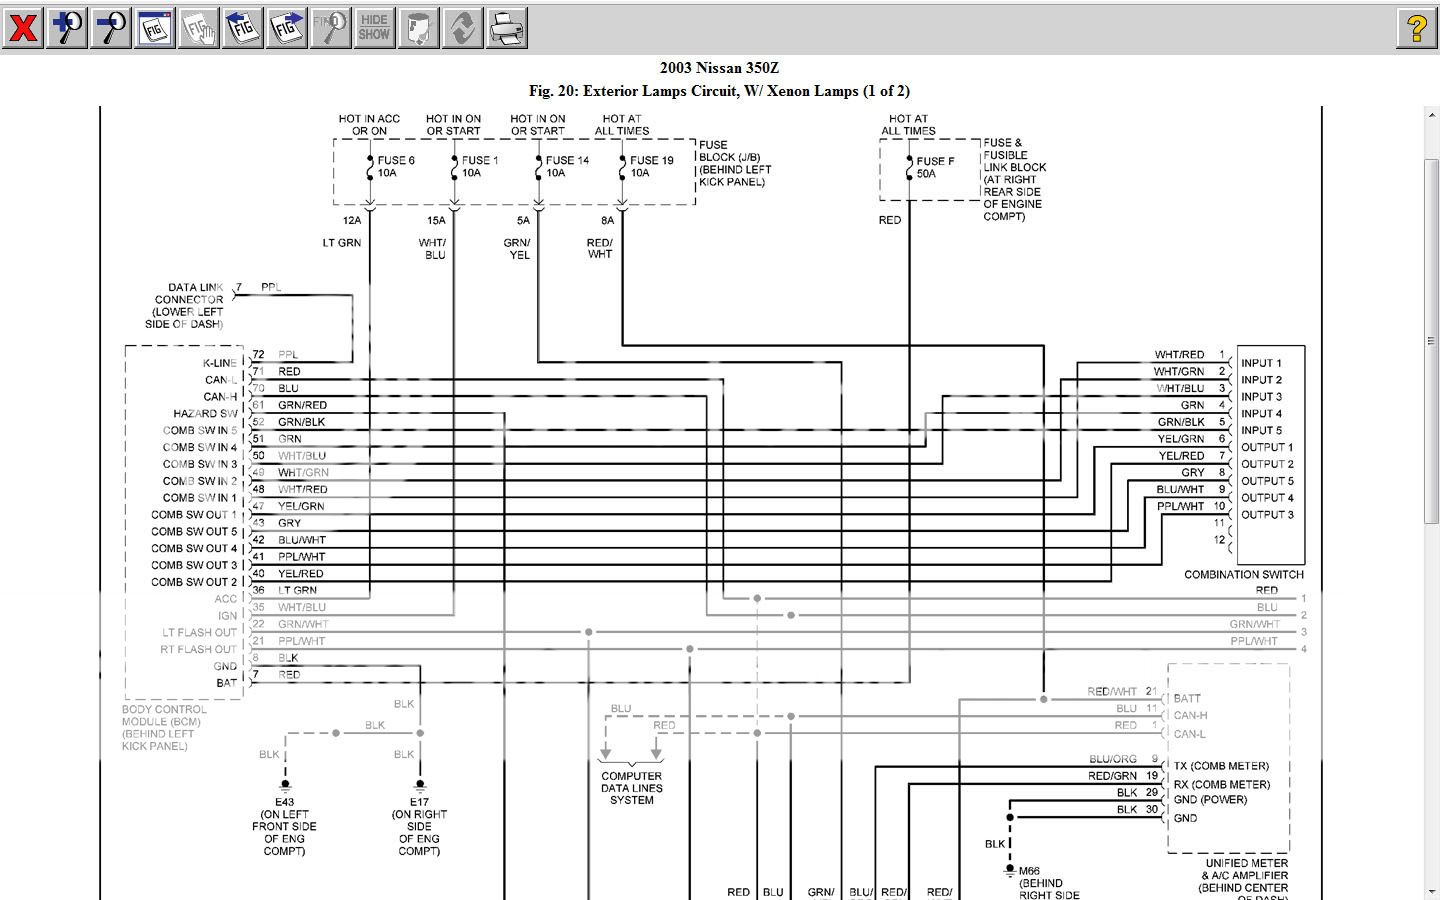 350Z Tail Light Problems - Nissan 350Z Forum, Nissan 370Z ... 370z stereo wiring diagram 